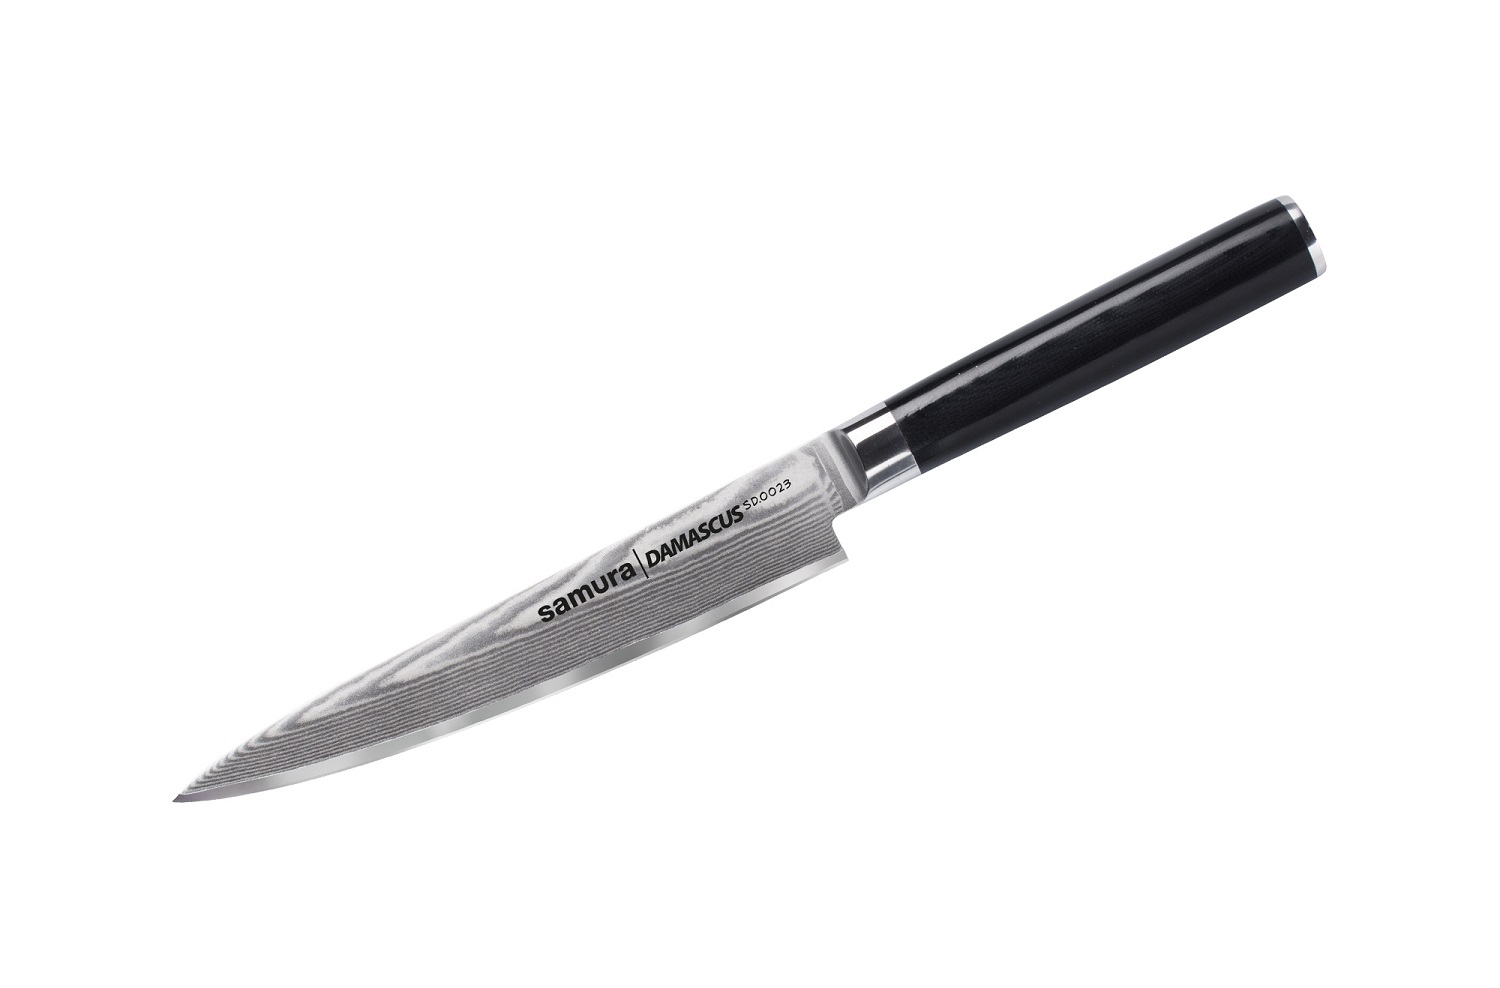 Нож Samura универсальный Damascus, 15 см, G-10, дамаск 67 слоев нож samura damascus накири 16 7 см g 10 дамаск 67 слоев